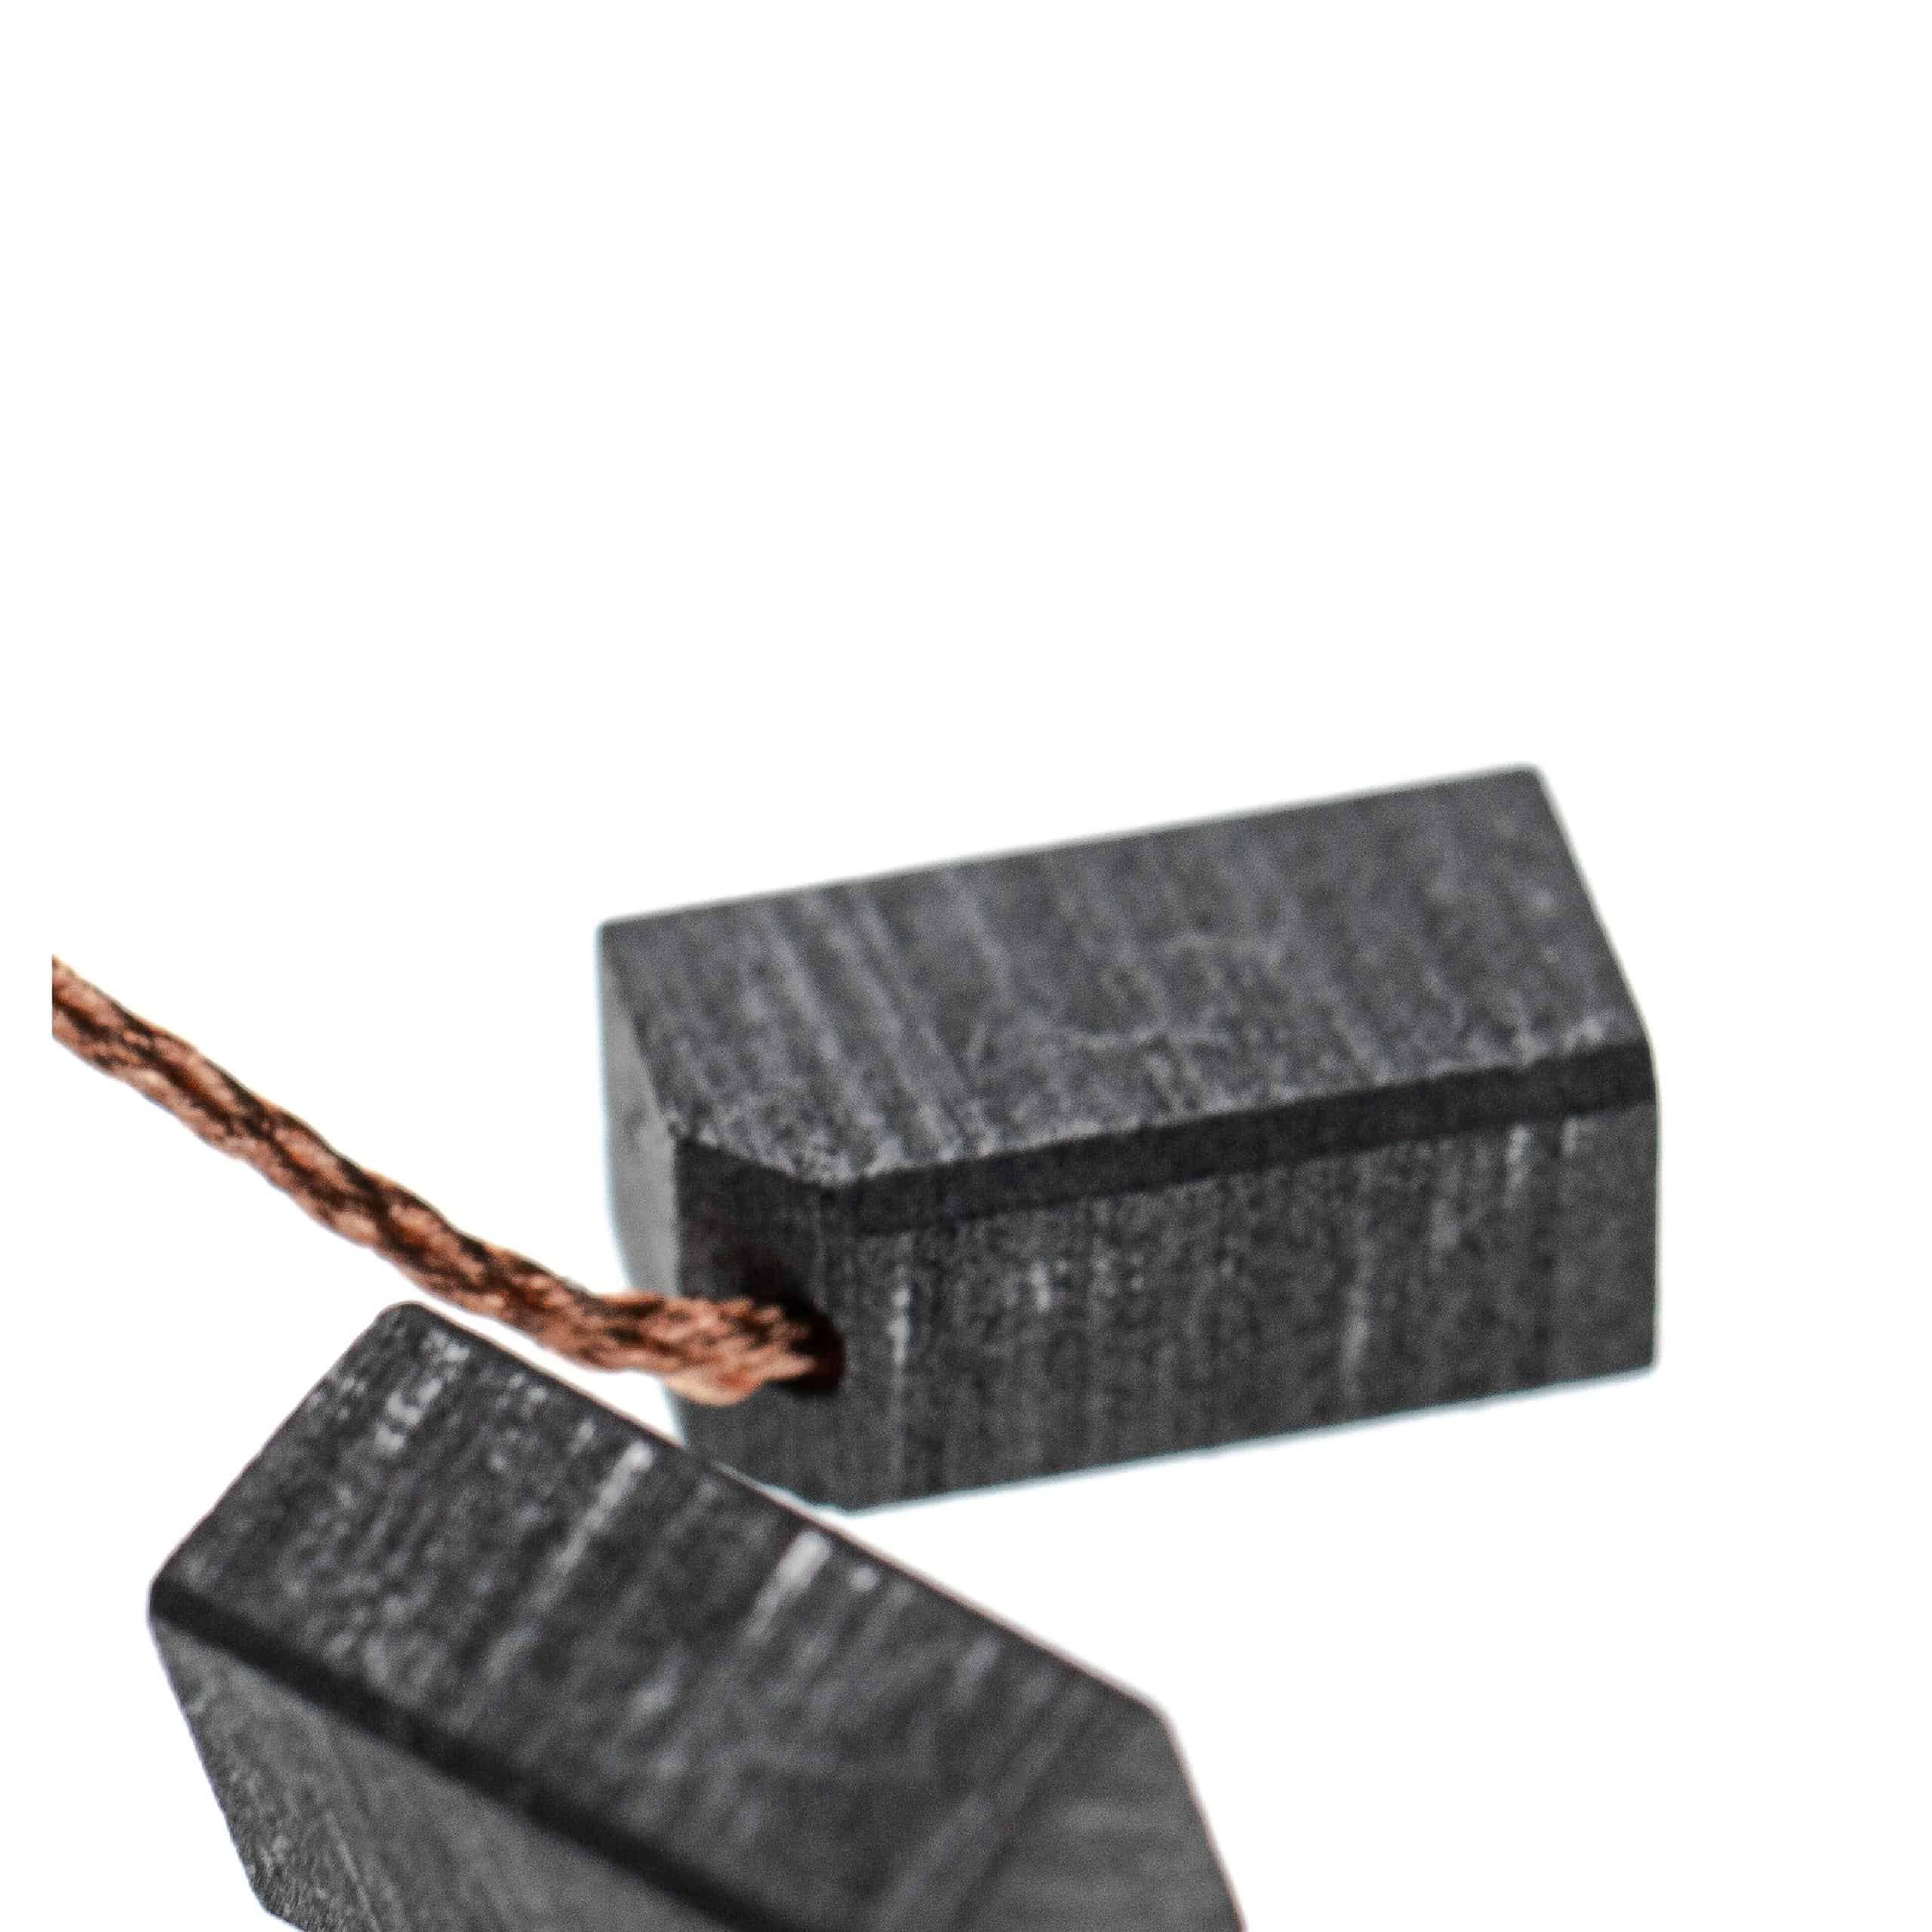 2x Balais de charbon remplace Dewalt 939539-00 pour outil électrique - 13,8 x 6,2 x 8mm